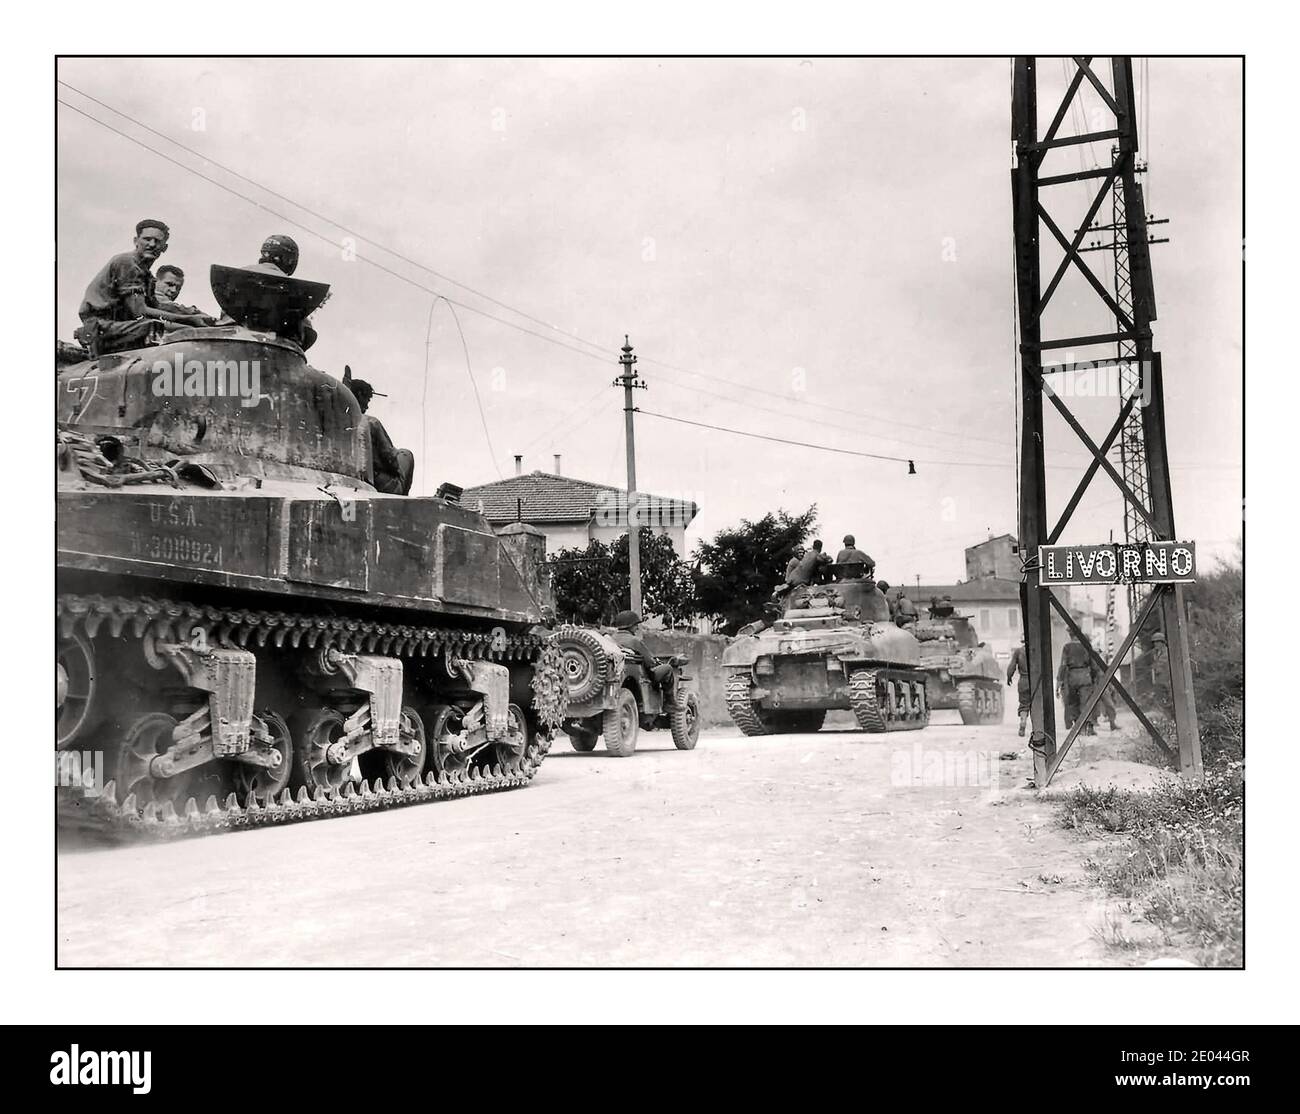 LIVORNO WW2 Anzio 34. Infanterie-Division. M4 Sherman Panzer und Jeep in Livorno Italien 1944 Zweiten Weltkrieg die Schlacht von Anzio war eine Schlacht der italienischen Kampagne des Zweiten Weltkriegs, die vom 22. Januar 1944 (beginnend mit der alliierten amphibischen Landung als Operation Schindel bekannt) bis zum 5. Juni stattfand, 1944 (endet mit der Eroberung Roms). Die Operation wurde erfolglos von deutschen Truppen in der Gegend von Anzio und Nettuno abgelehnt. Stockfoto